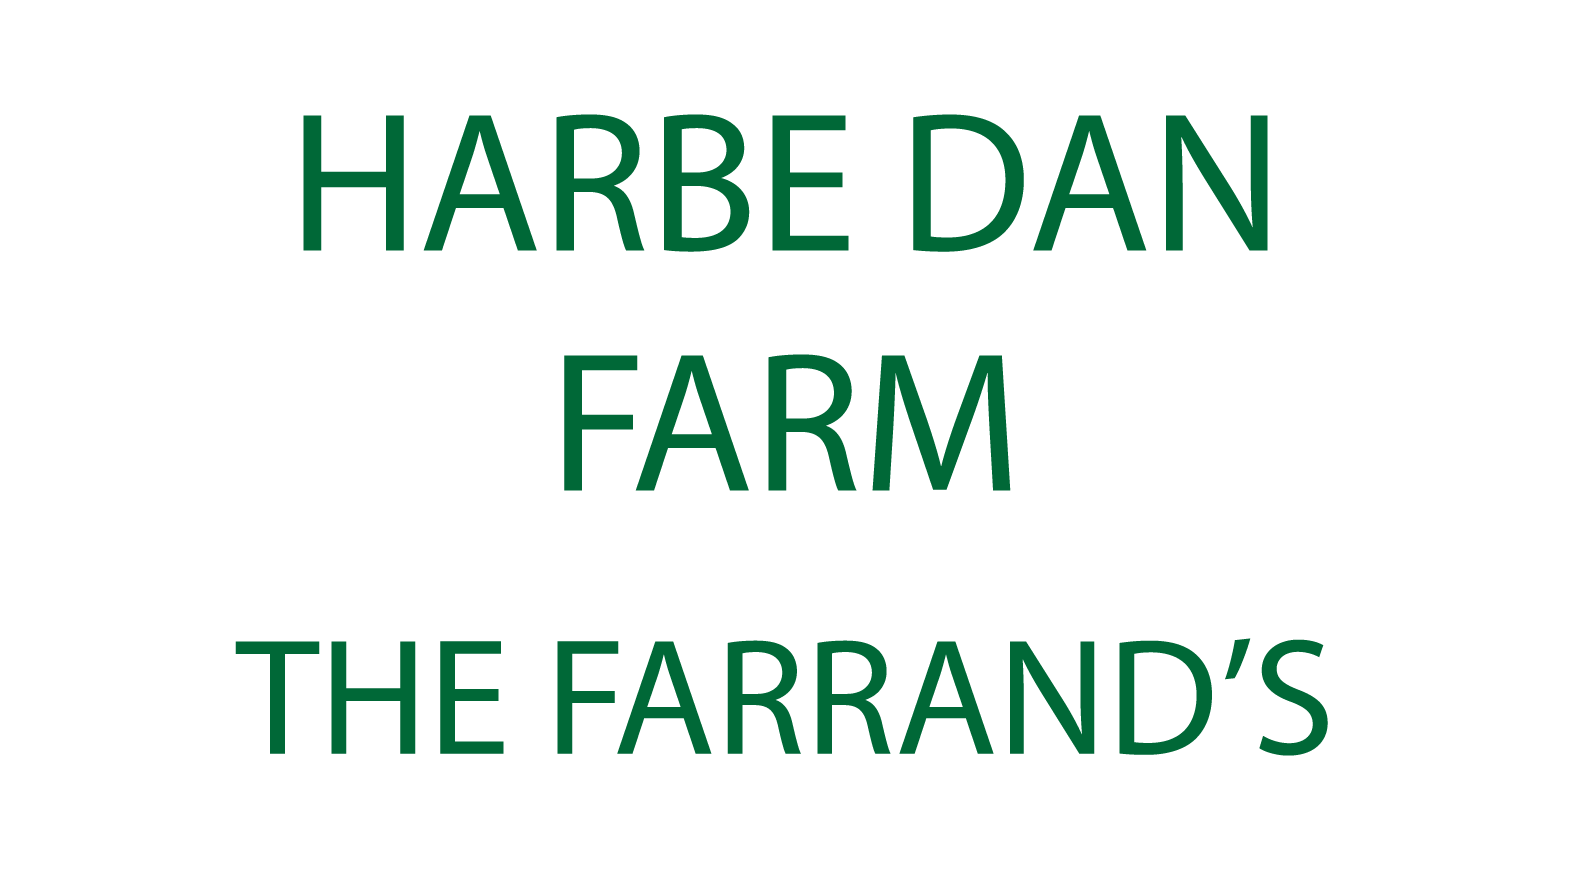 Harbre Dan Farm